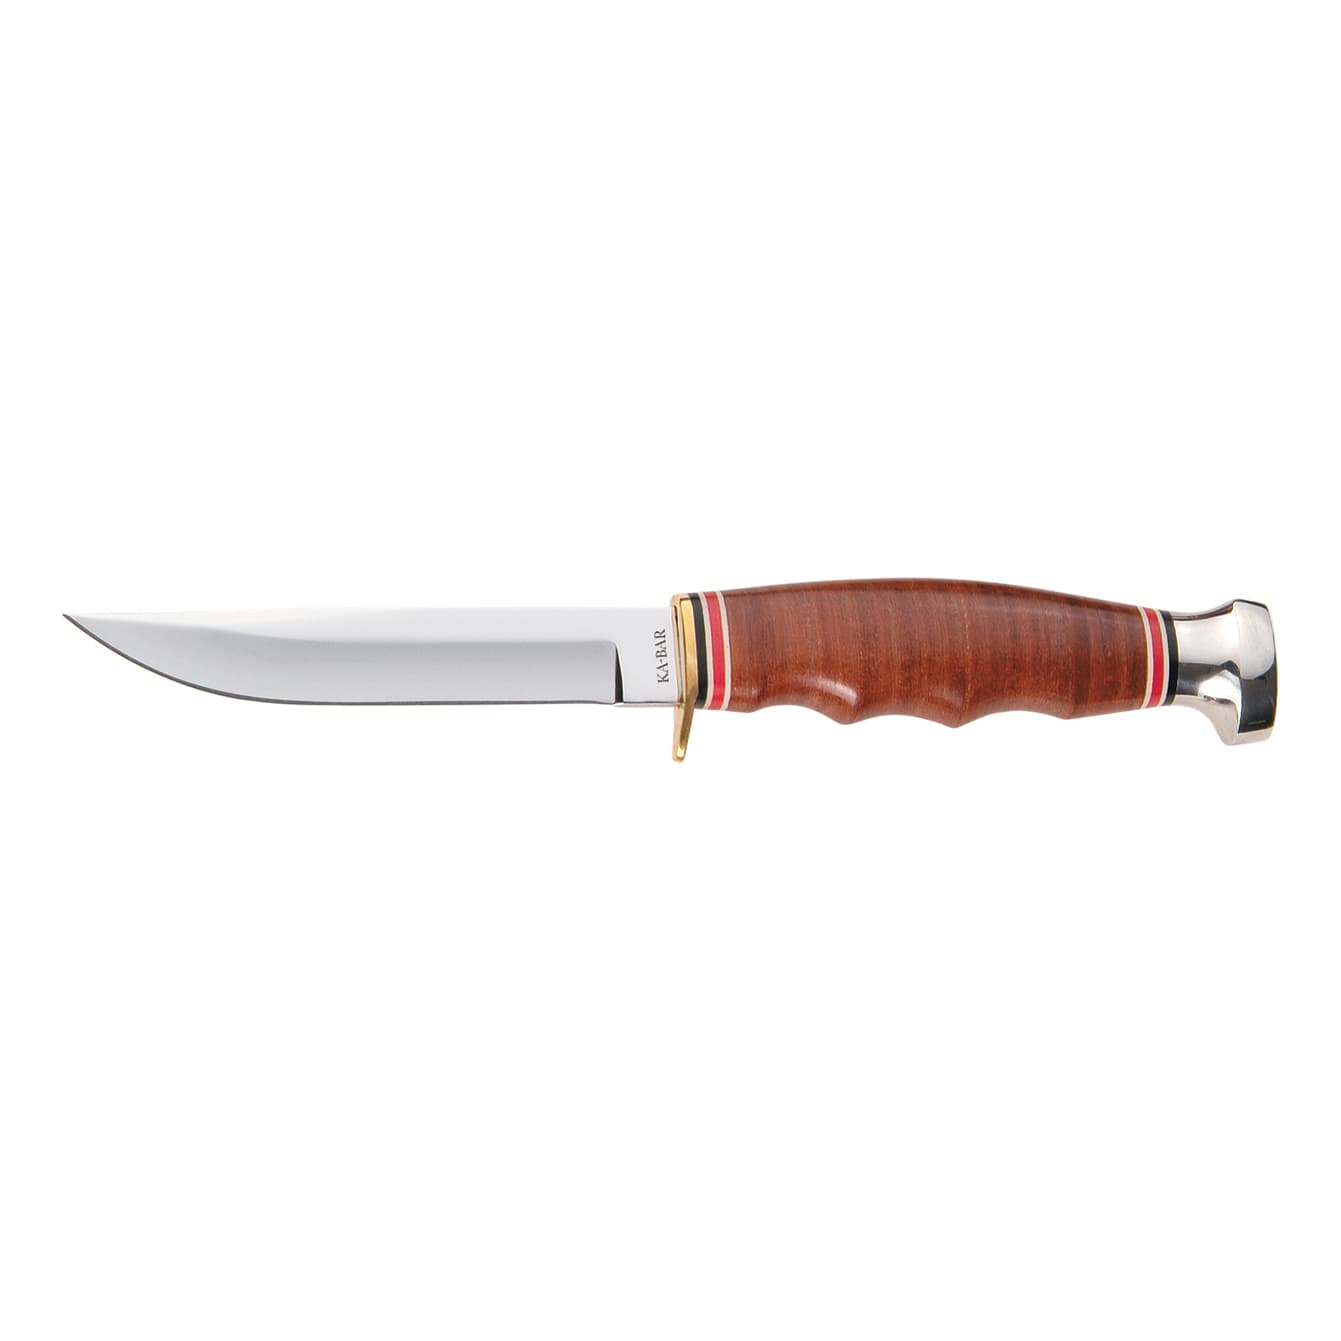 KA-BAR® Leather Handled Hunter Fixed Blade Knife